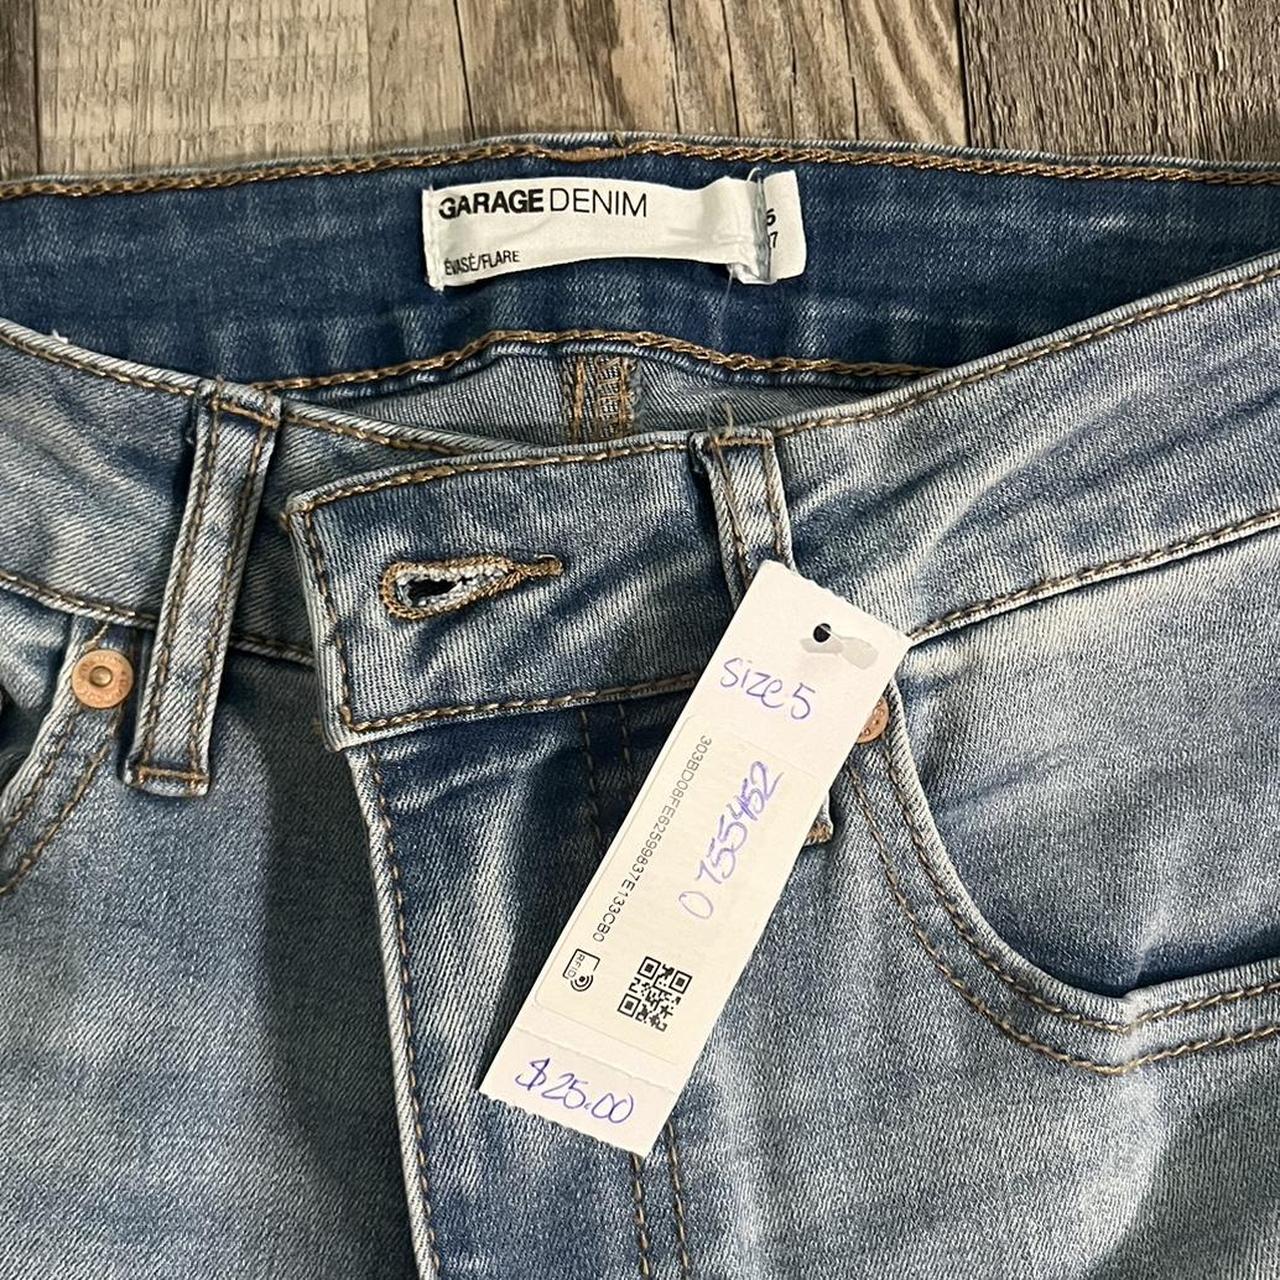 garage jeans tag on size 5 flare - Depop